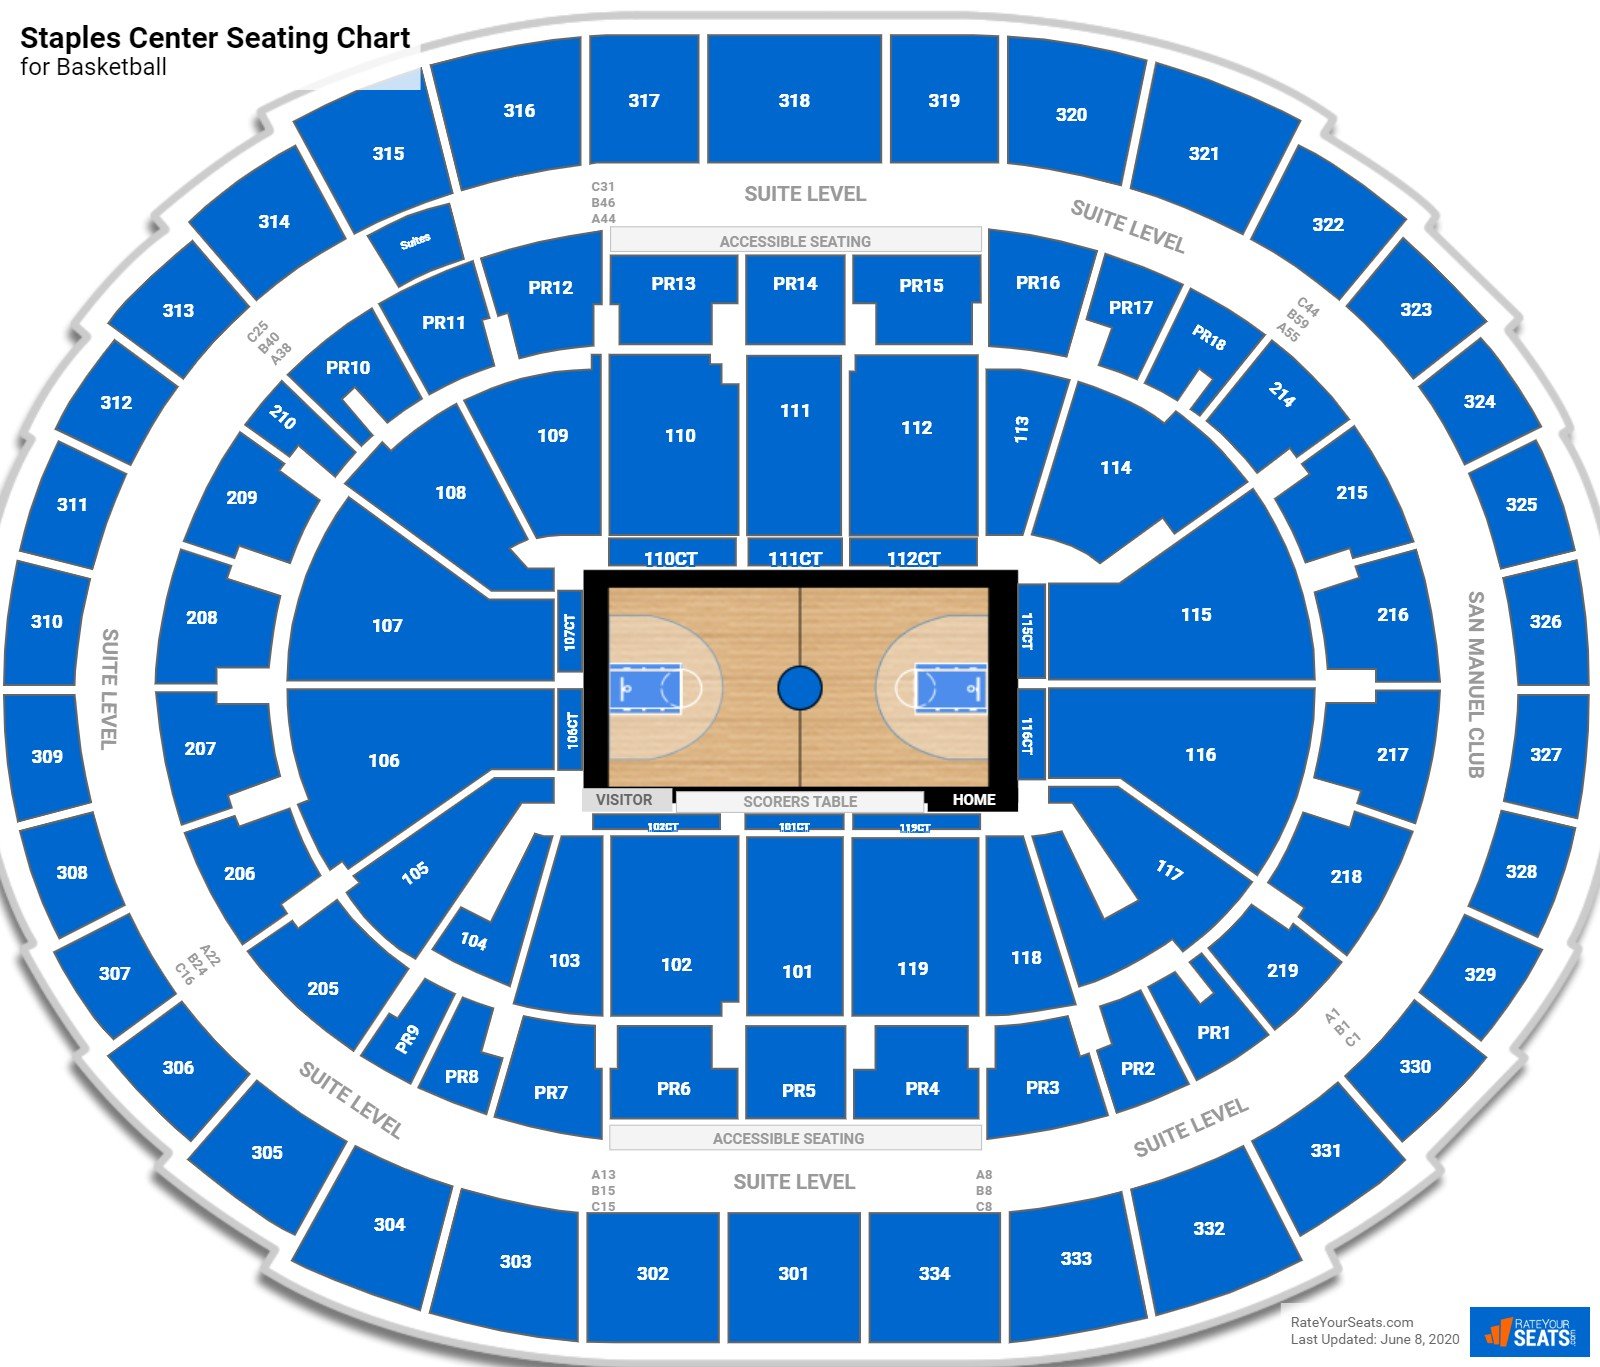 Staples Center Seating Chart For Basketball 